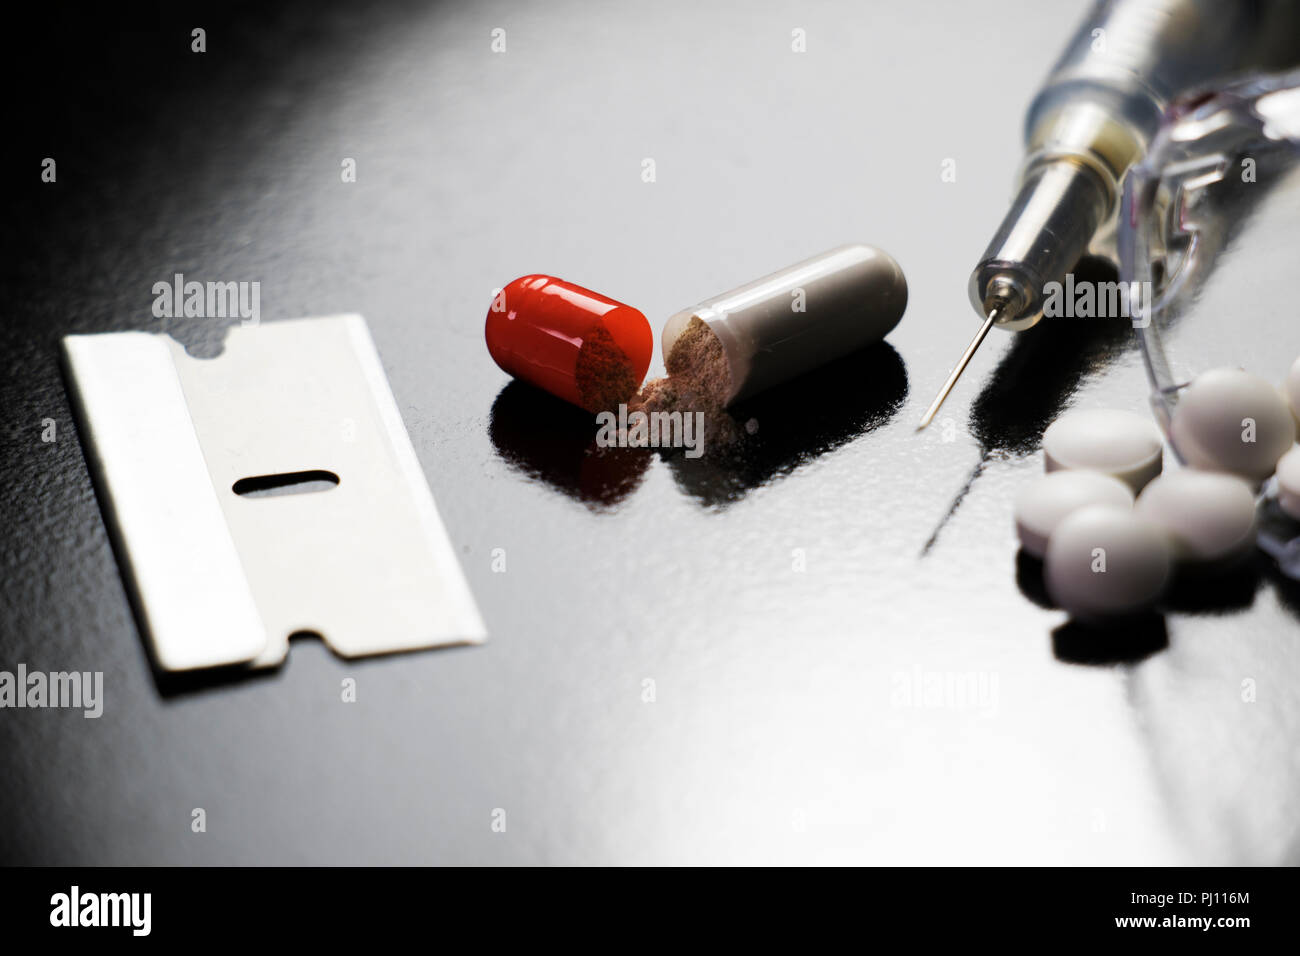 Droge-utensilienien auf schwarzem Hintergrund. Pillen, Nadeln, Rasierklingen. Narkotische Objekte Drogenmissbrauch und Drogenabhängigkeit. Stockfoto